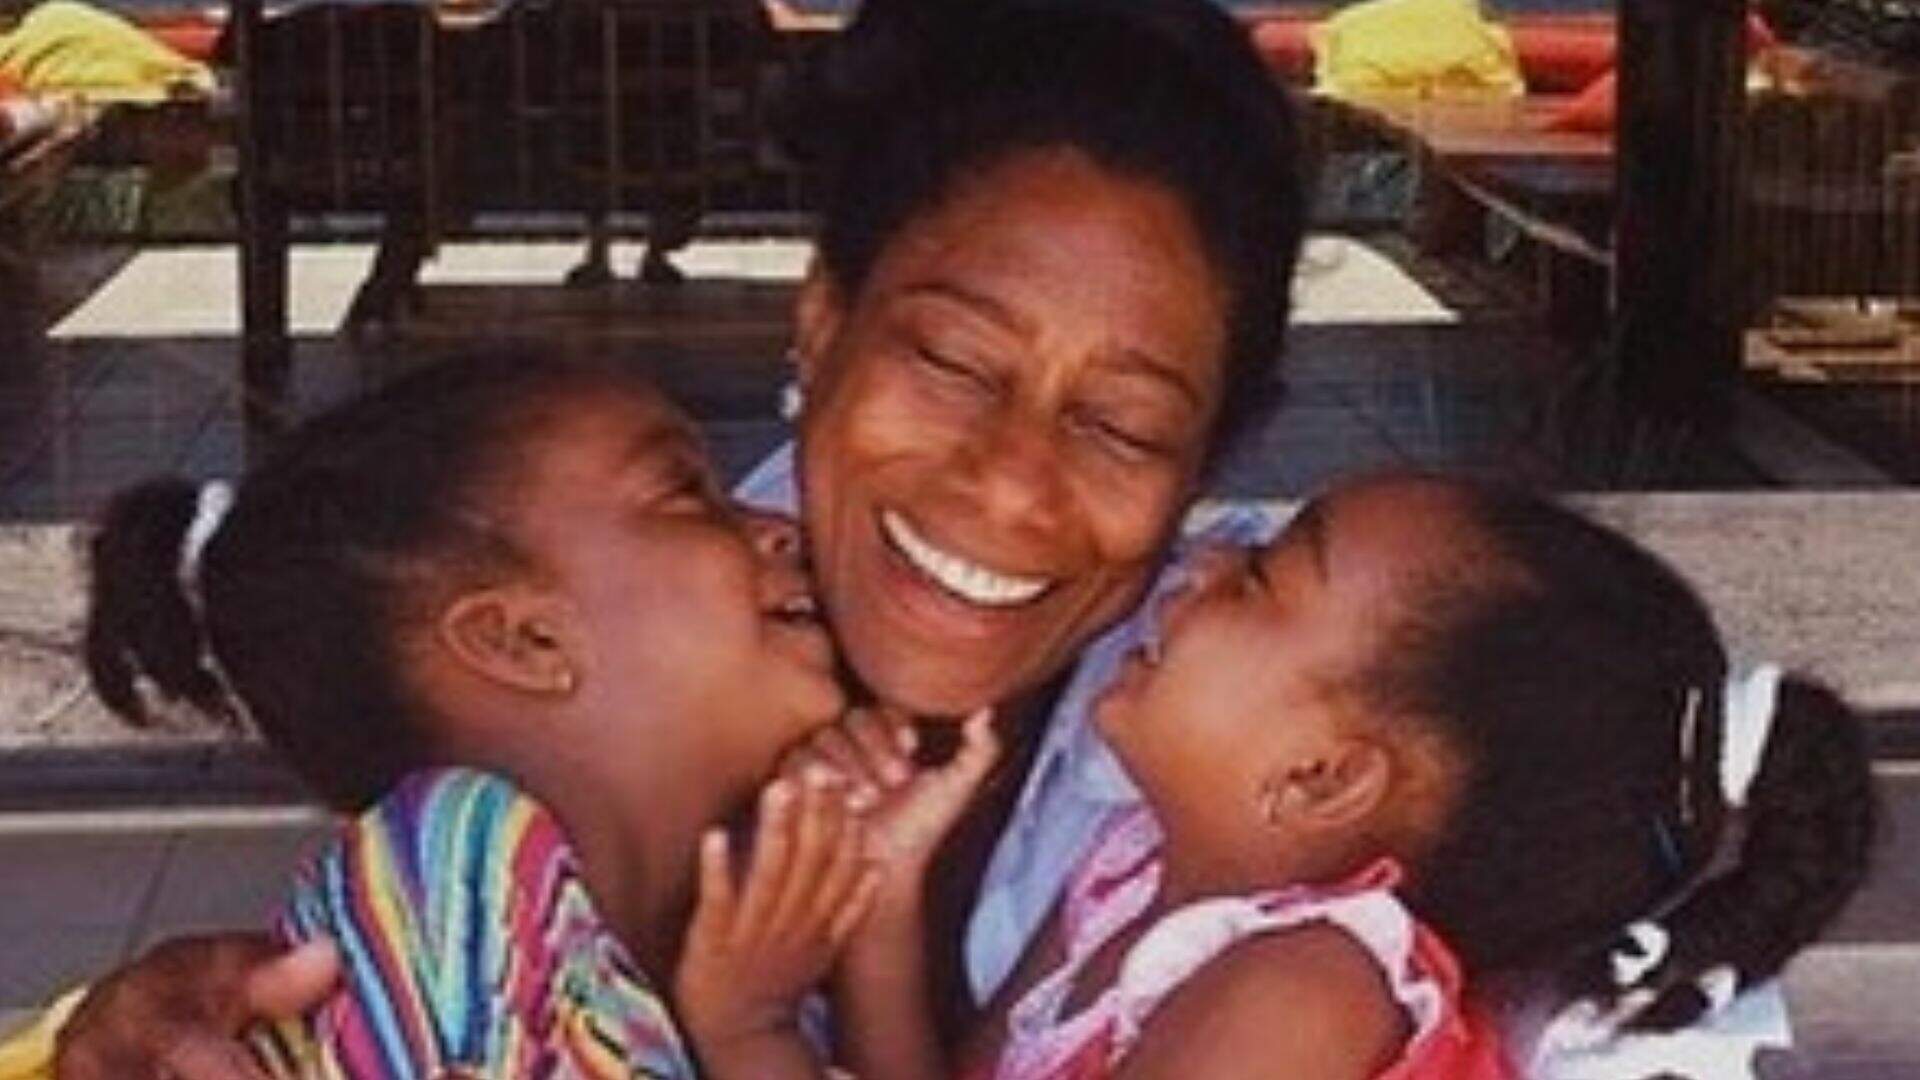 Filha de Glória Maria compartilha homenagem um mês após morte da mãe: “Saudades eternas” - Metropolitana FM